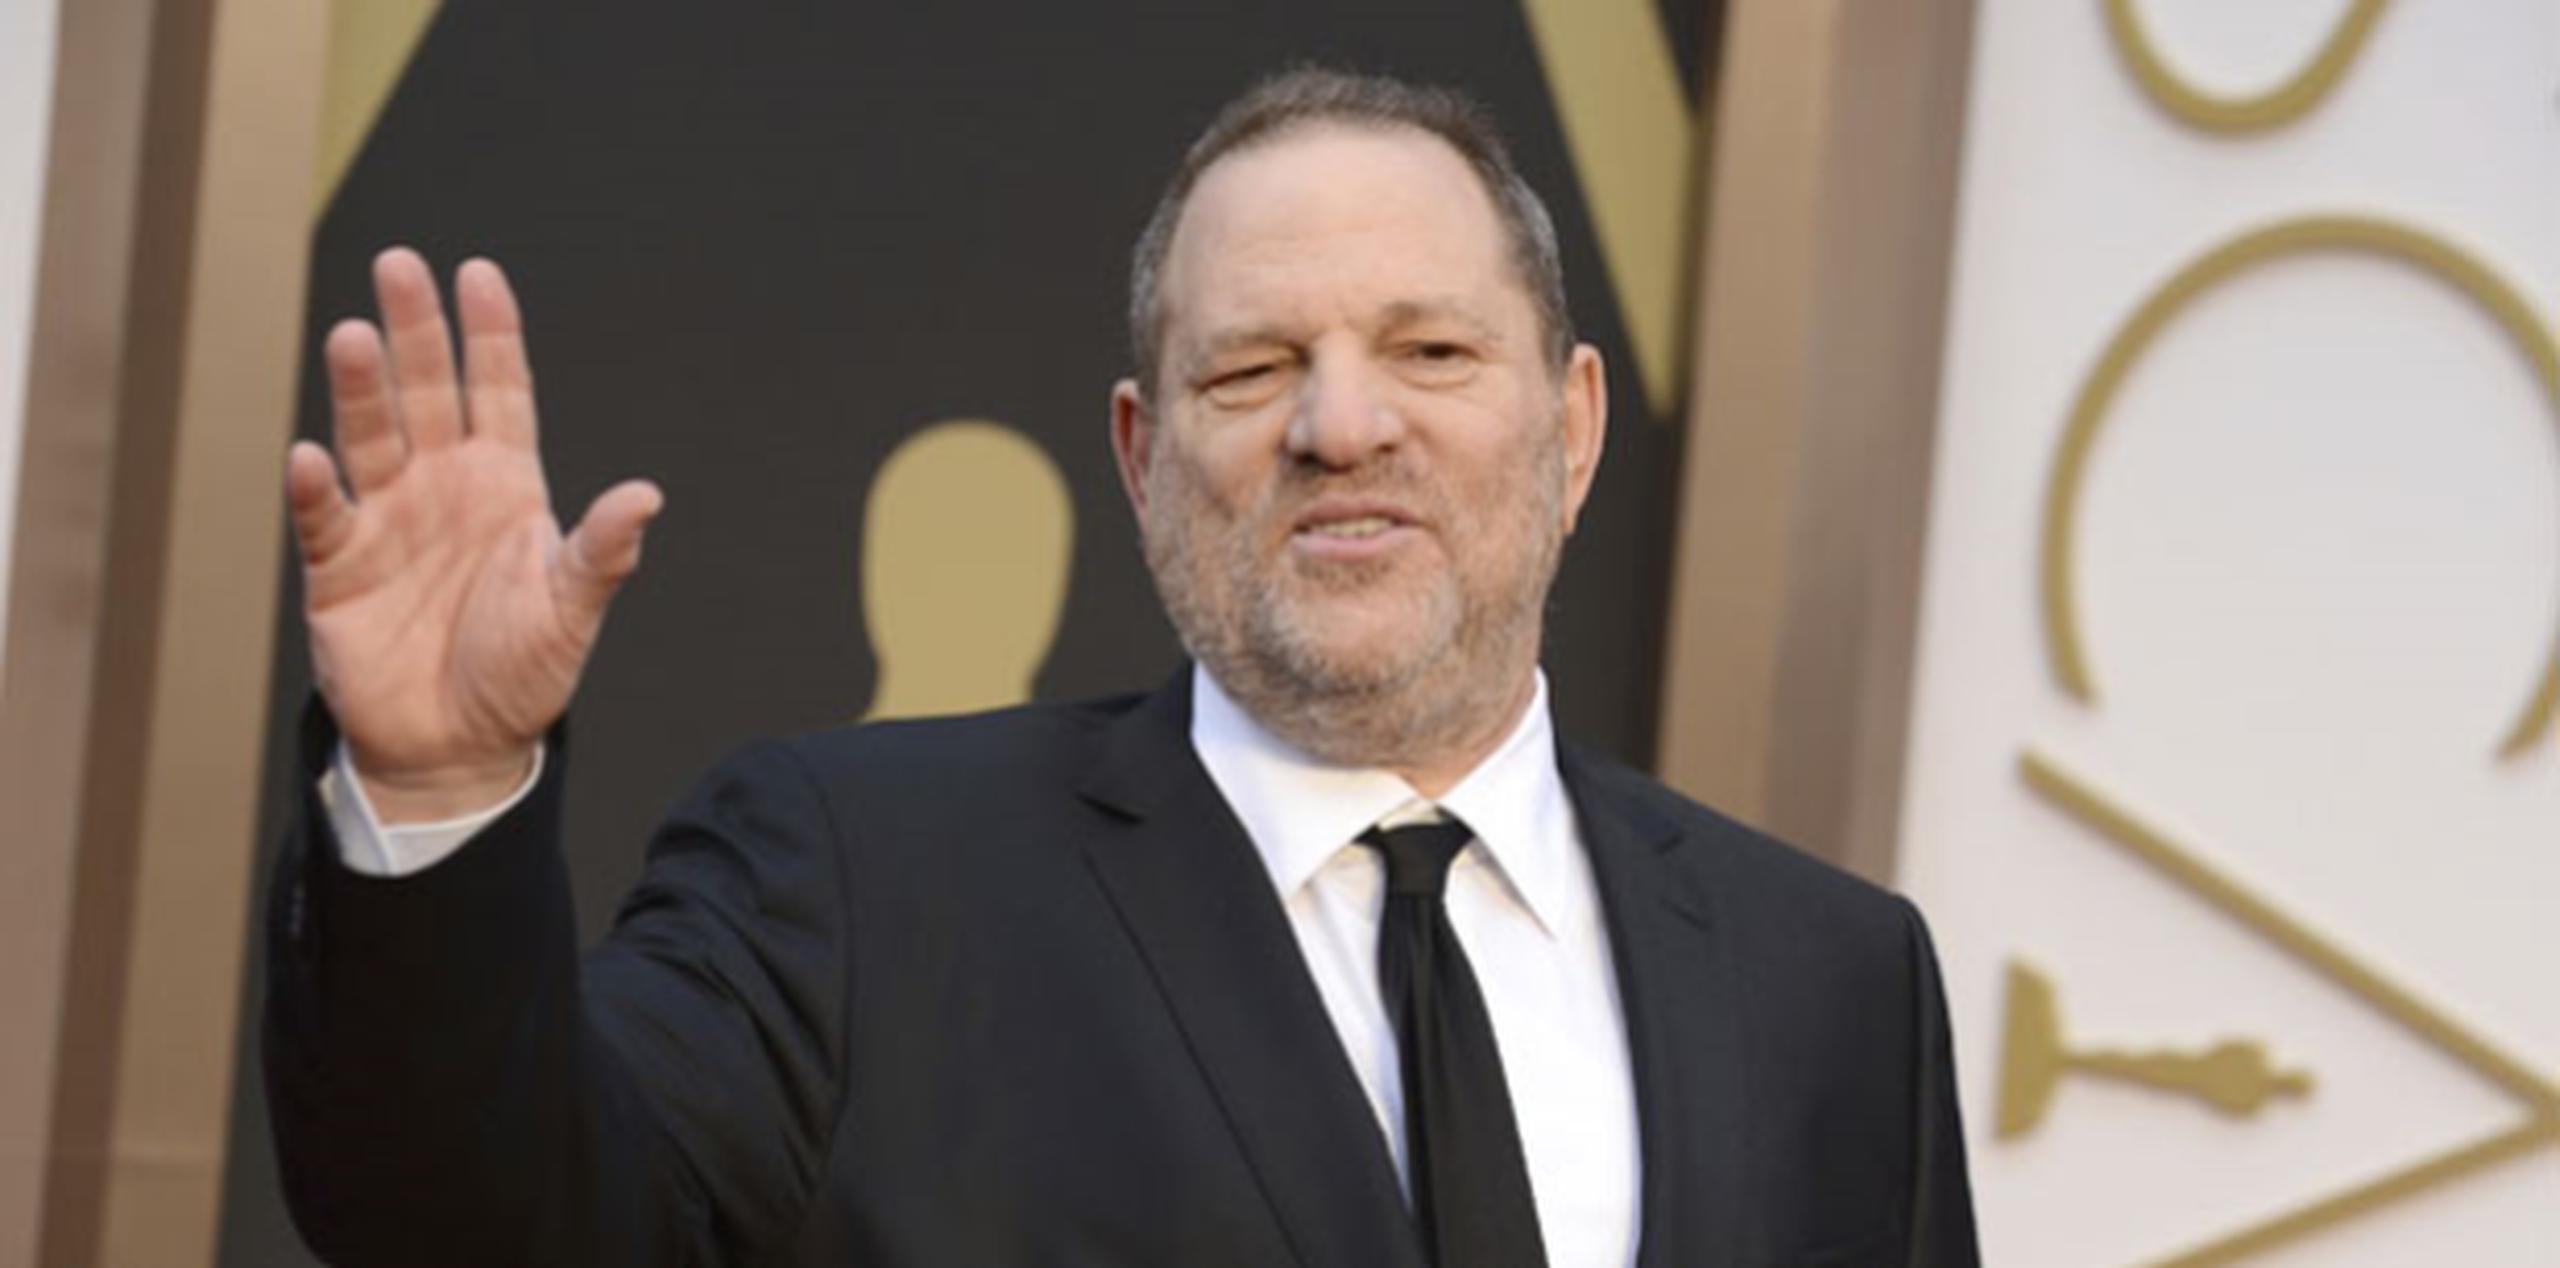 Representantes de Weinstein han negado antes todas las denuncias sobre relaciones sexuales sin consenso.  (Archivo)